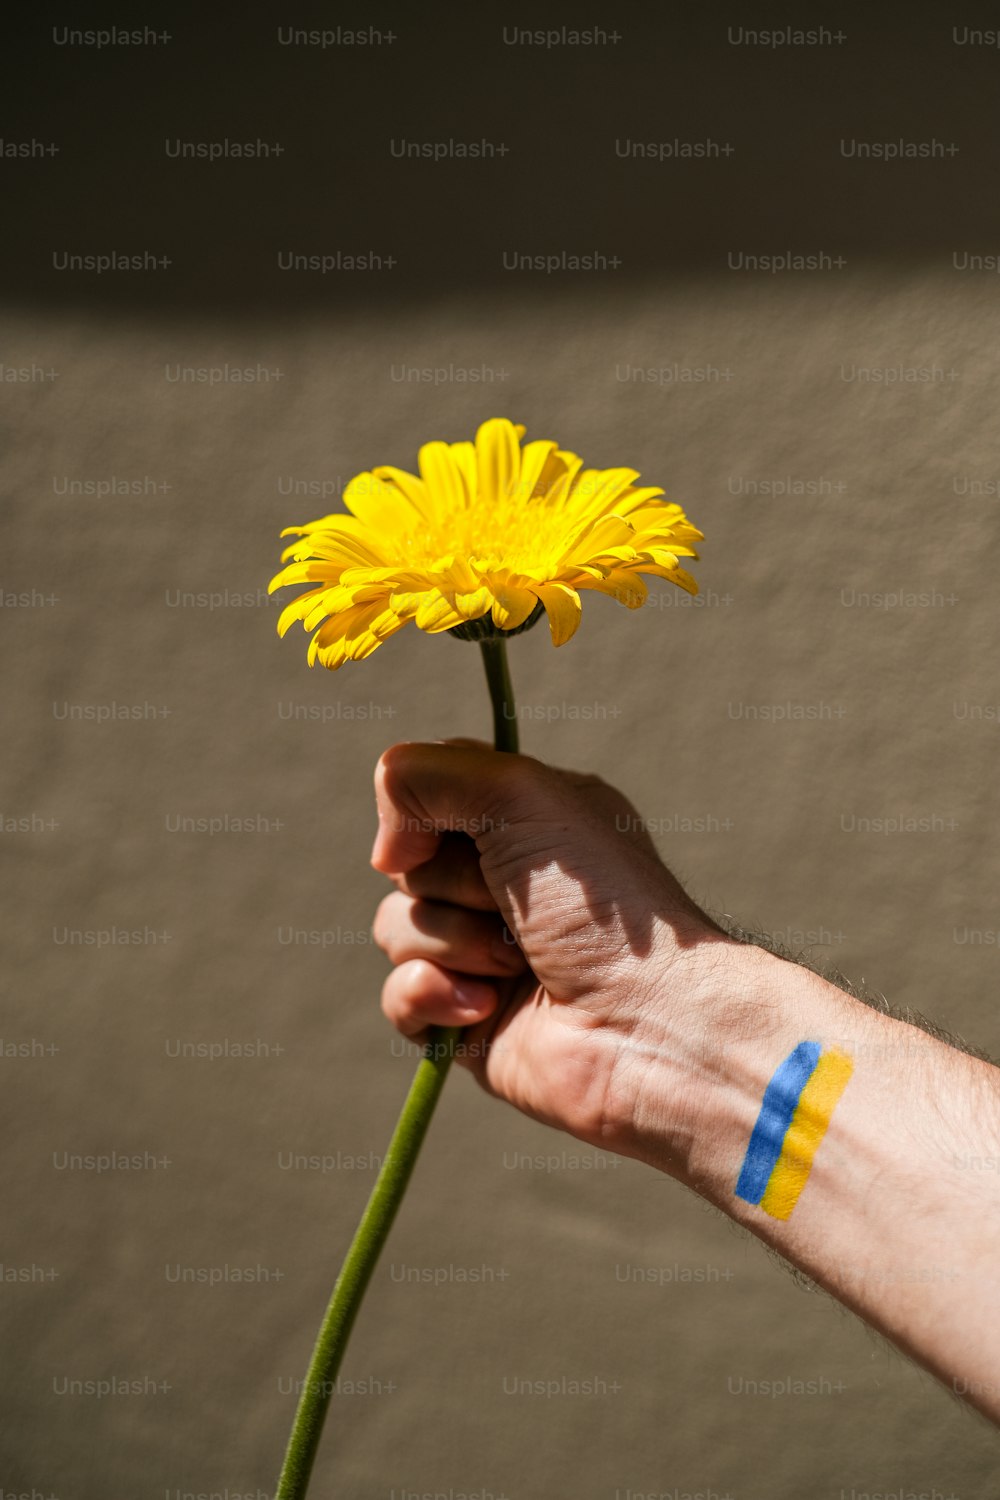 파란색 줄무늬가 있는 노란색 꽃을 들��고 있는 손